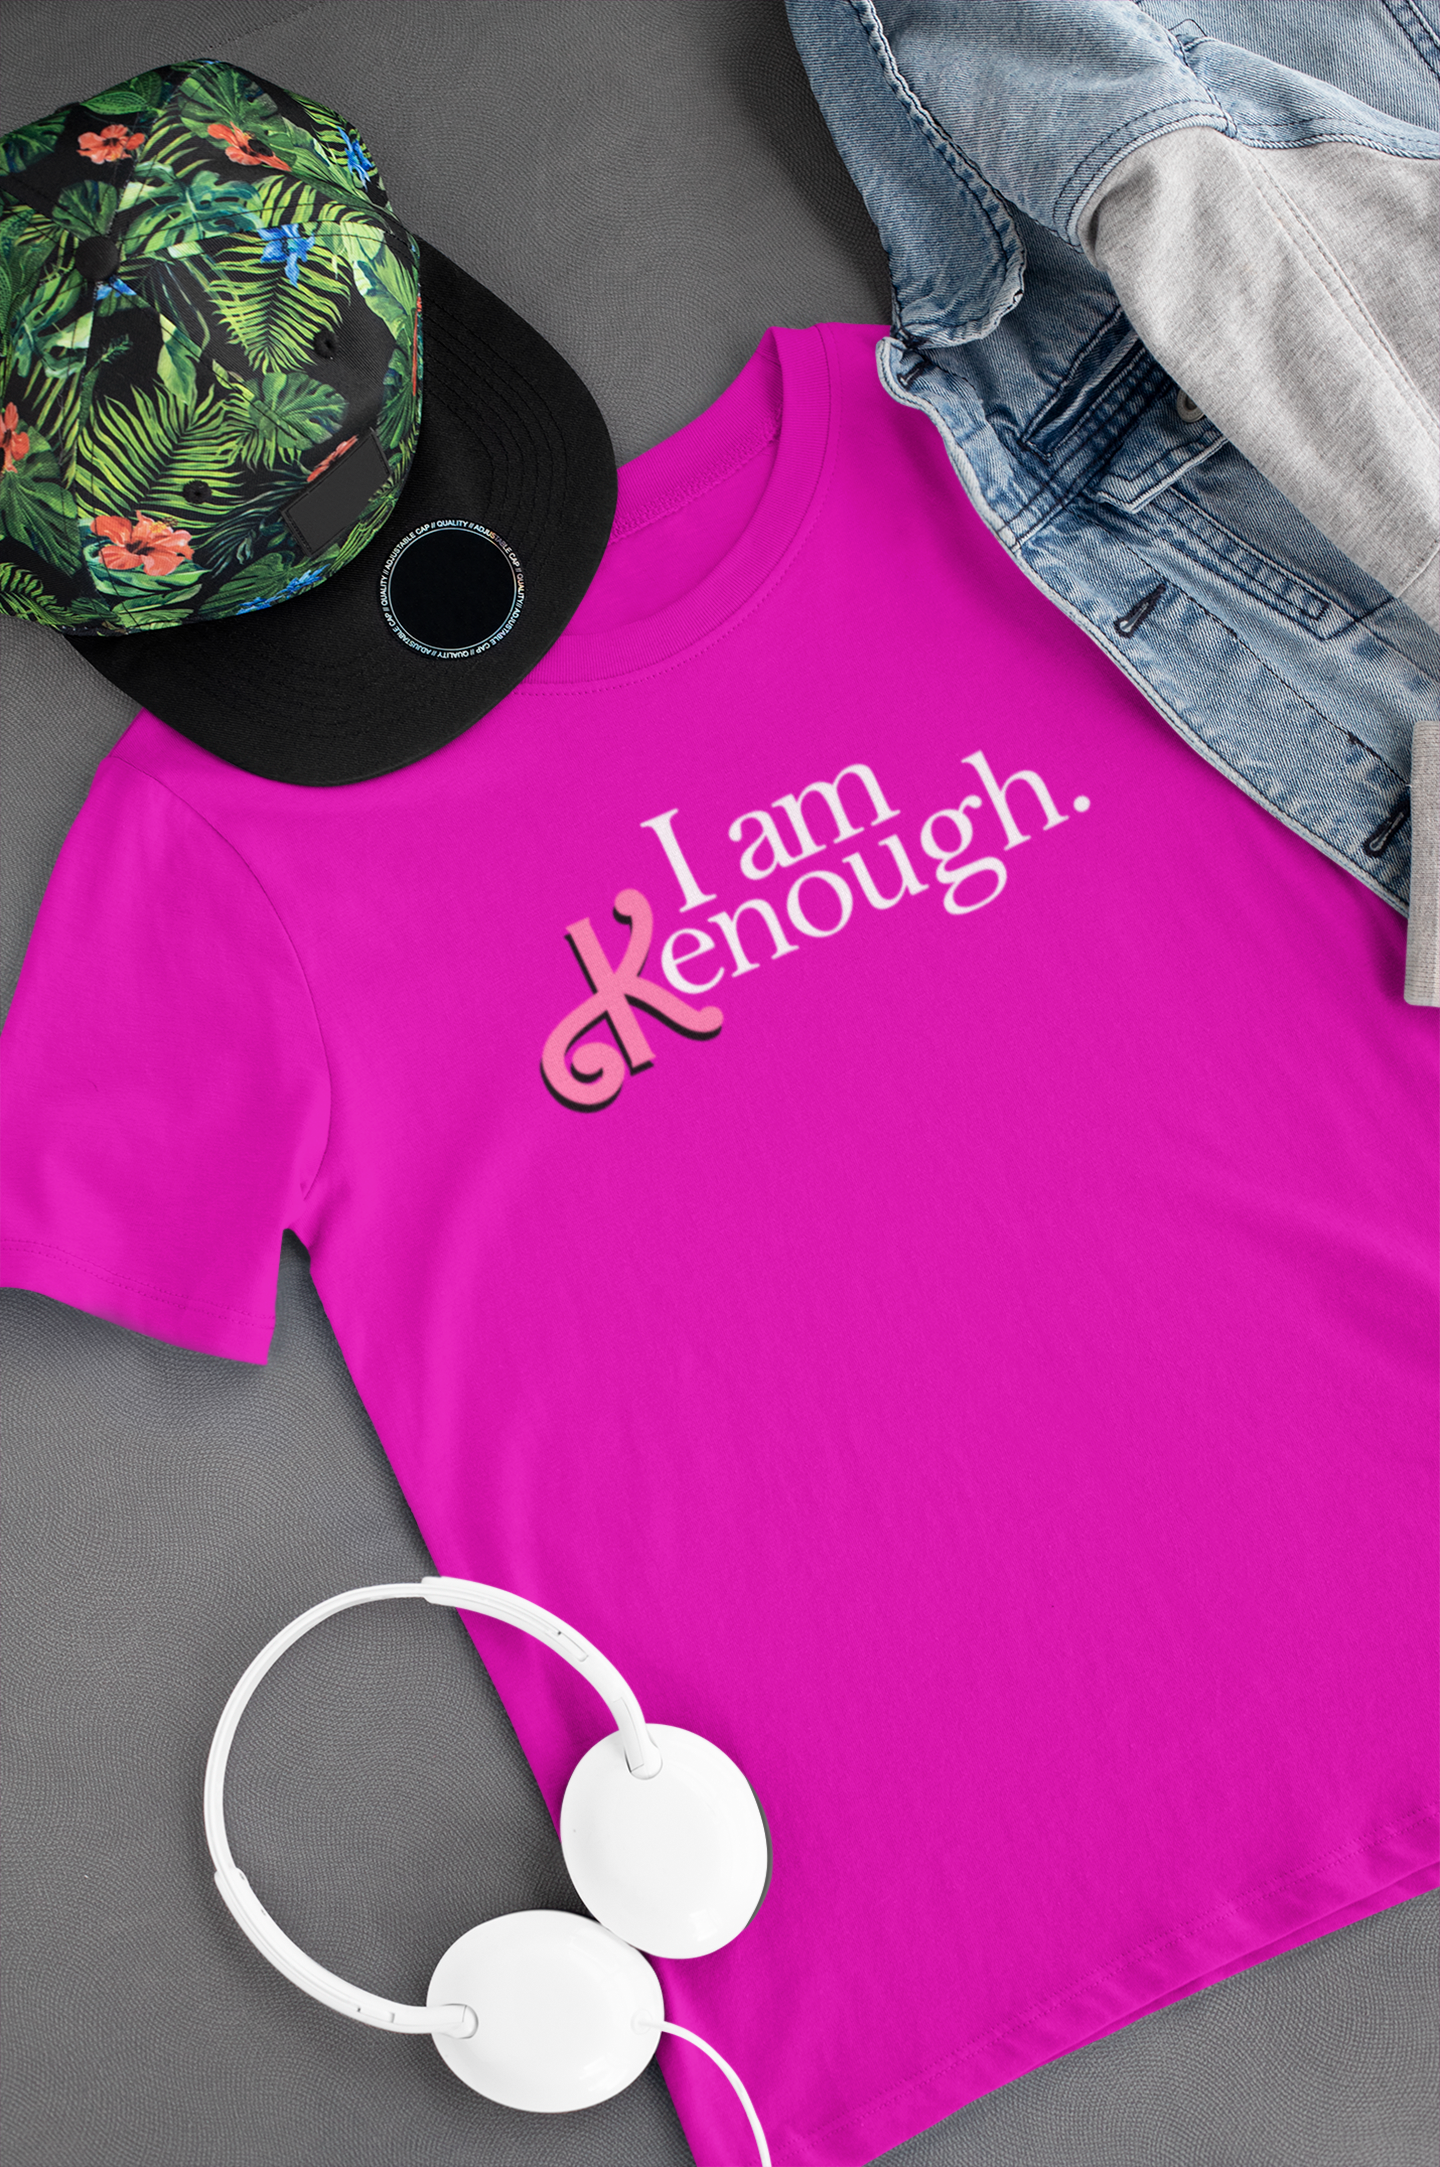 Camiseta "I am Kenough." - Barbie - Filmes